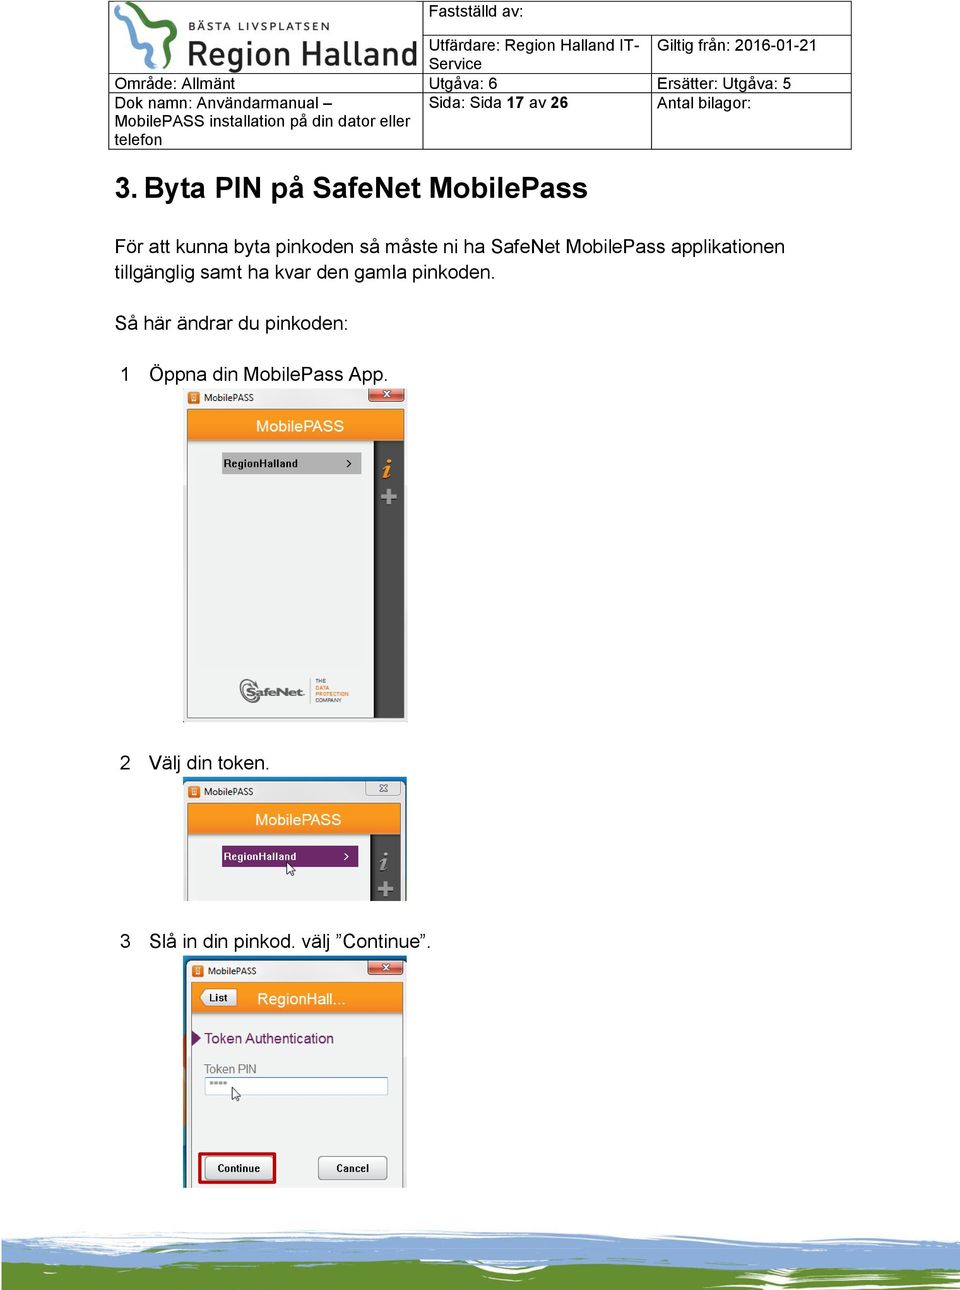 ha SafeNet MobilePass applikationen tillgänglig samt ha kvar den gamla